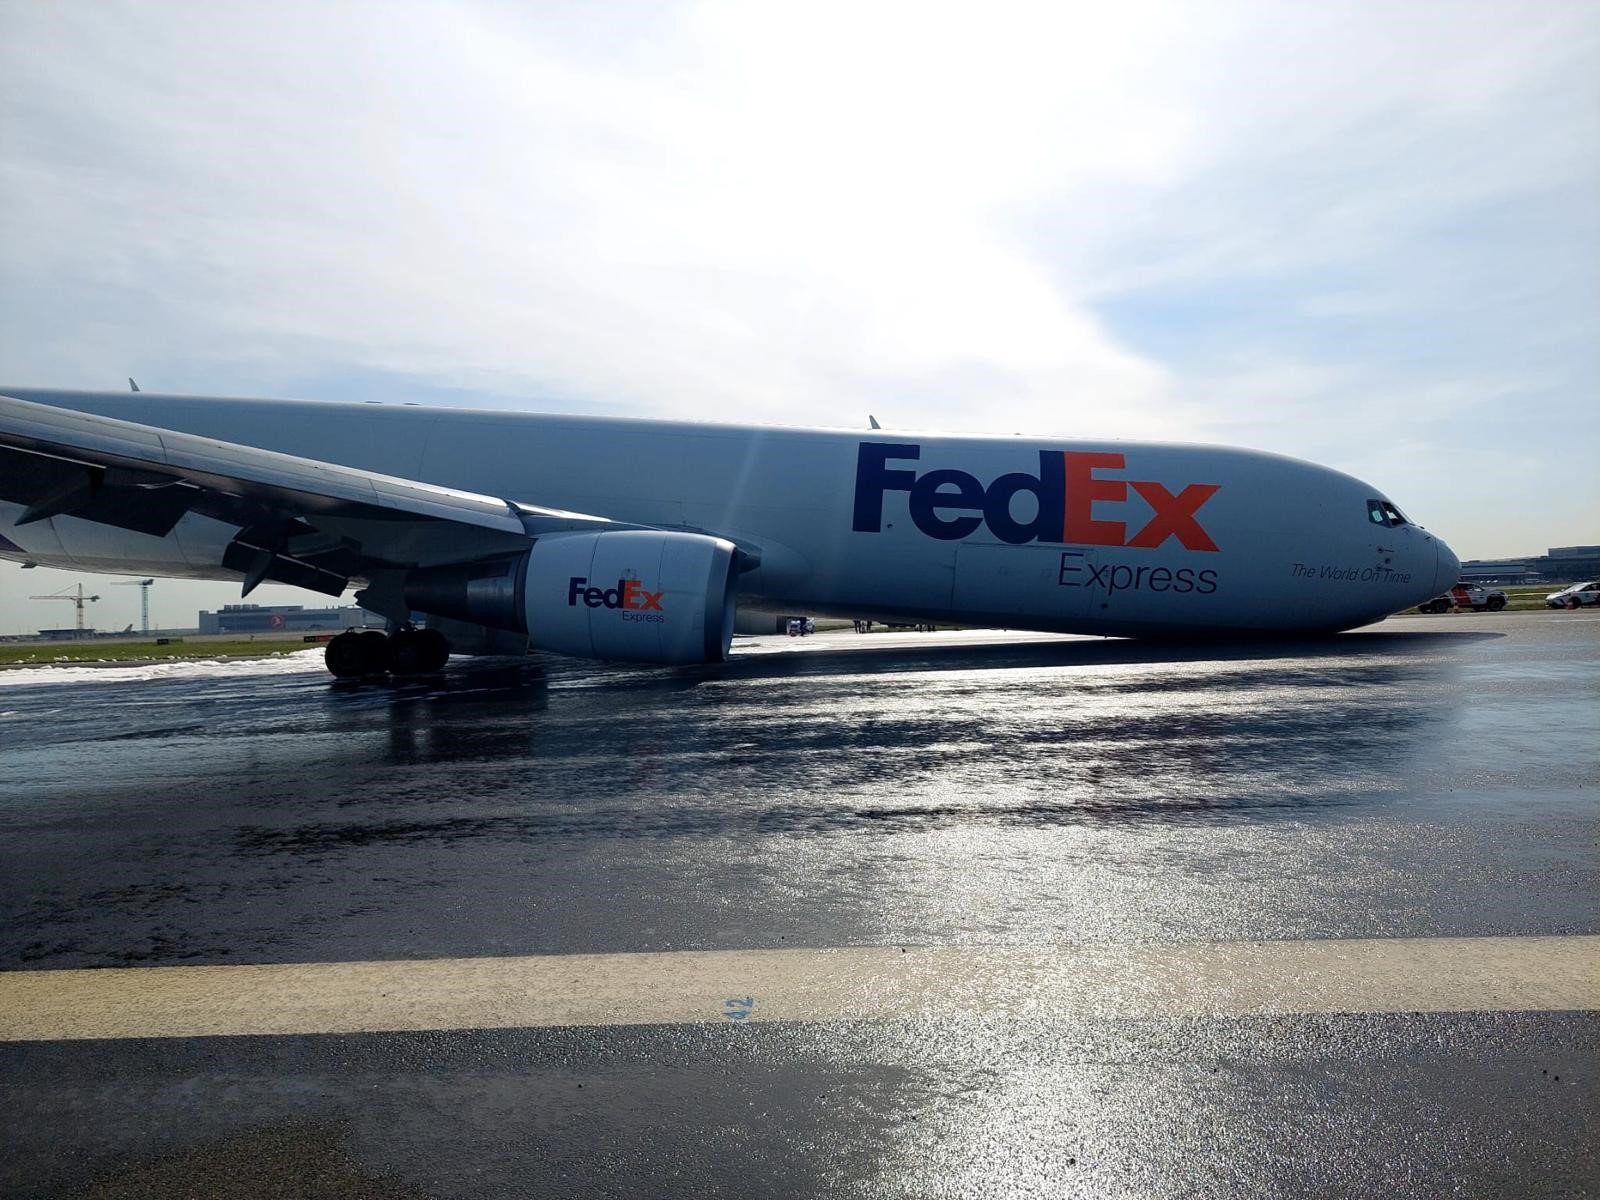 İstanbul Havalimanı'nda,Fedex Havayollarına ait Boeing 763 tipi bir kargo uçağı övde üzerine iniş yaptı.